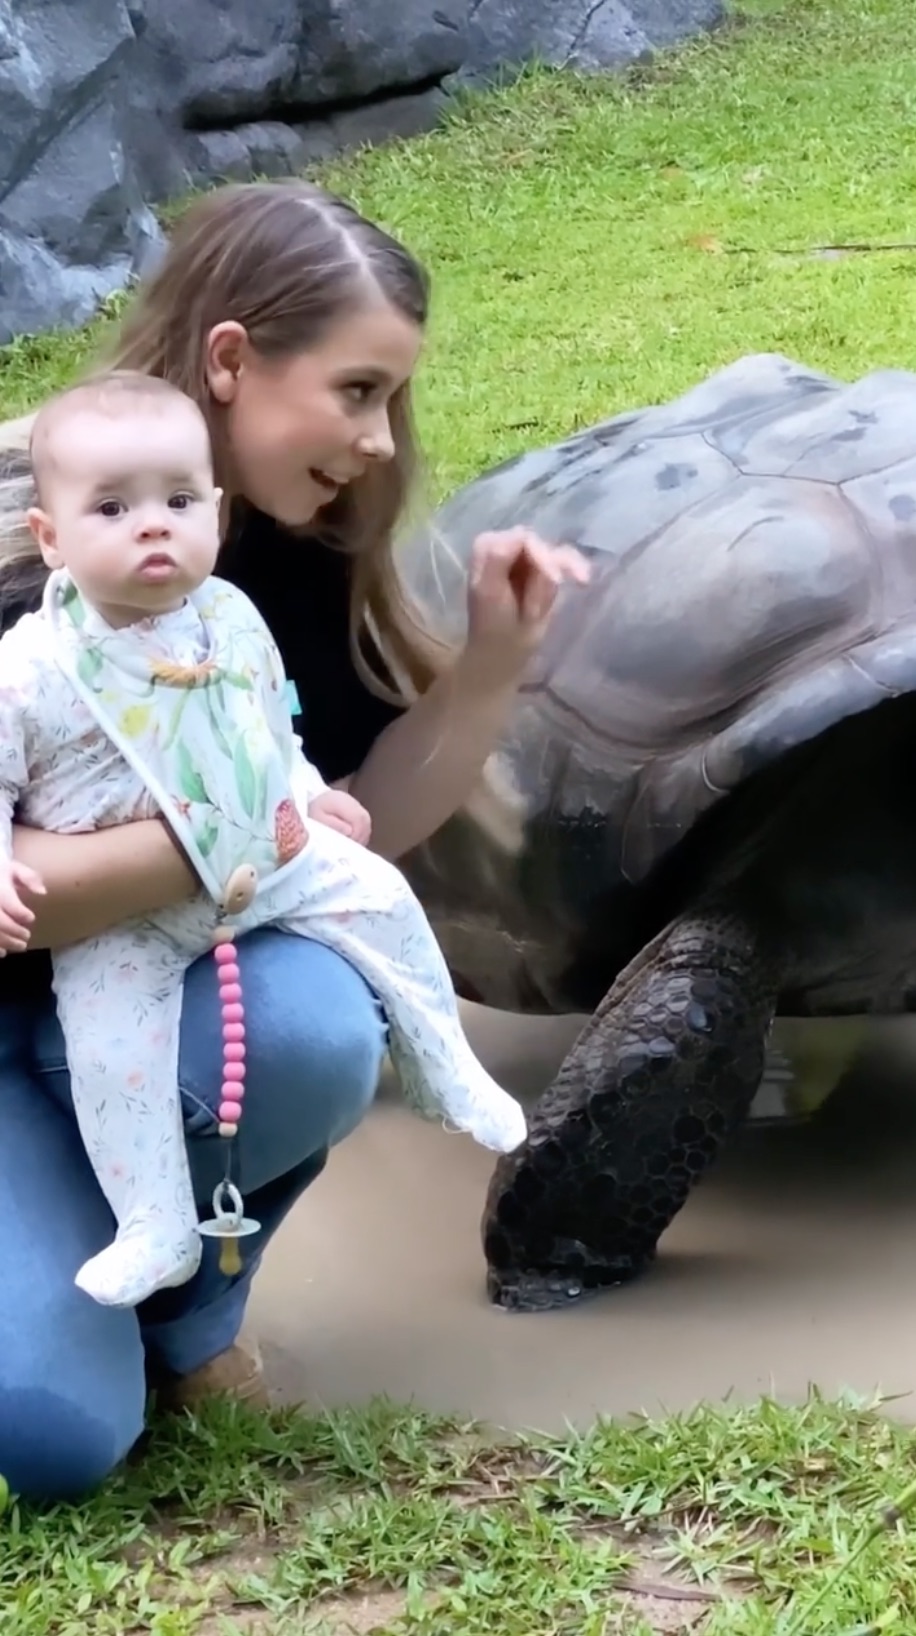 Bindi Irwin, Chandler Powell's Daughter Meets Tortoises and More Animals